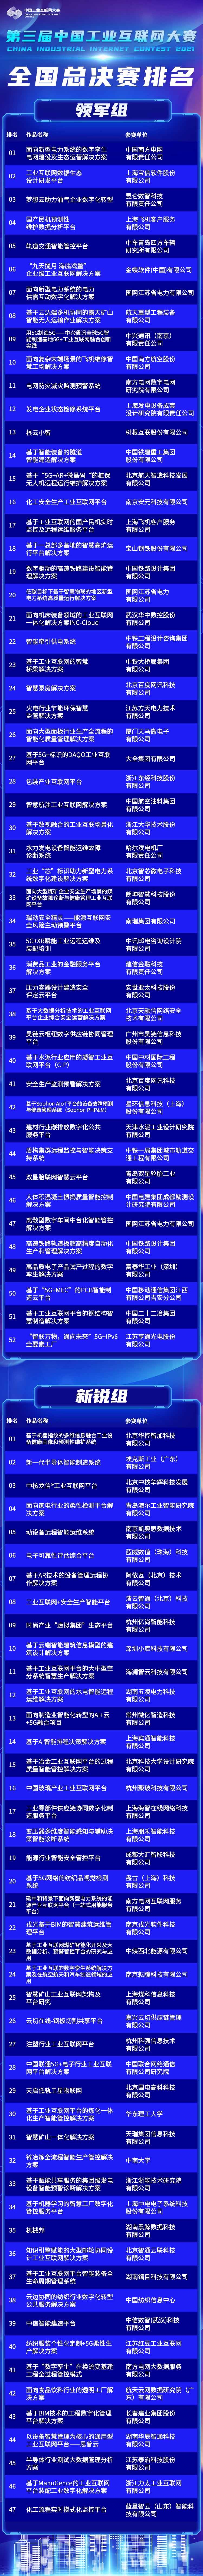 第三届中国工业互联网大赛全国总决赛排名出炉